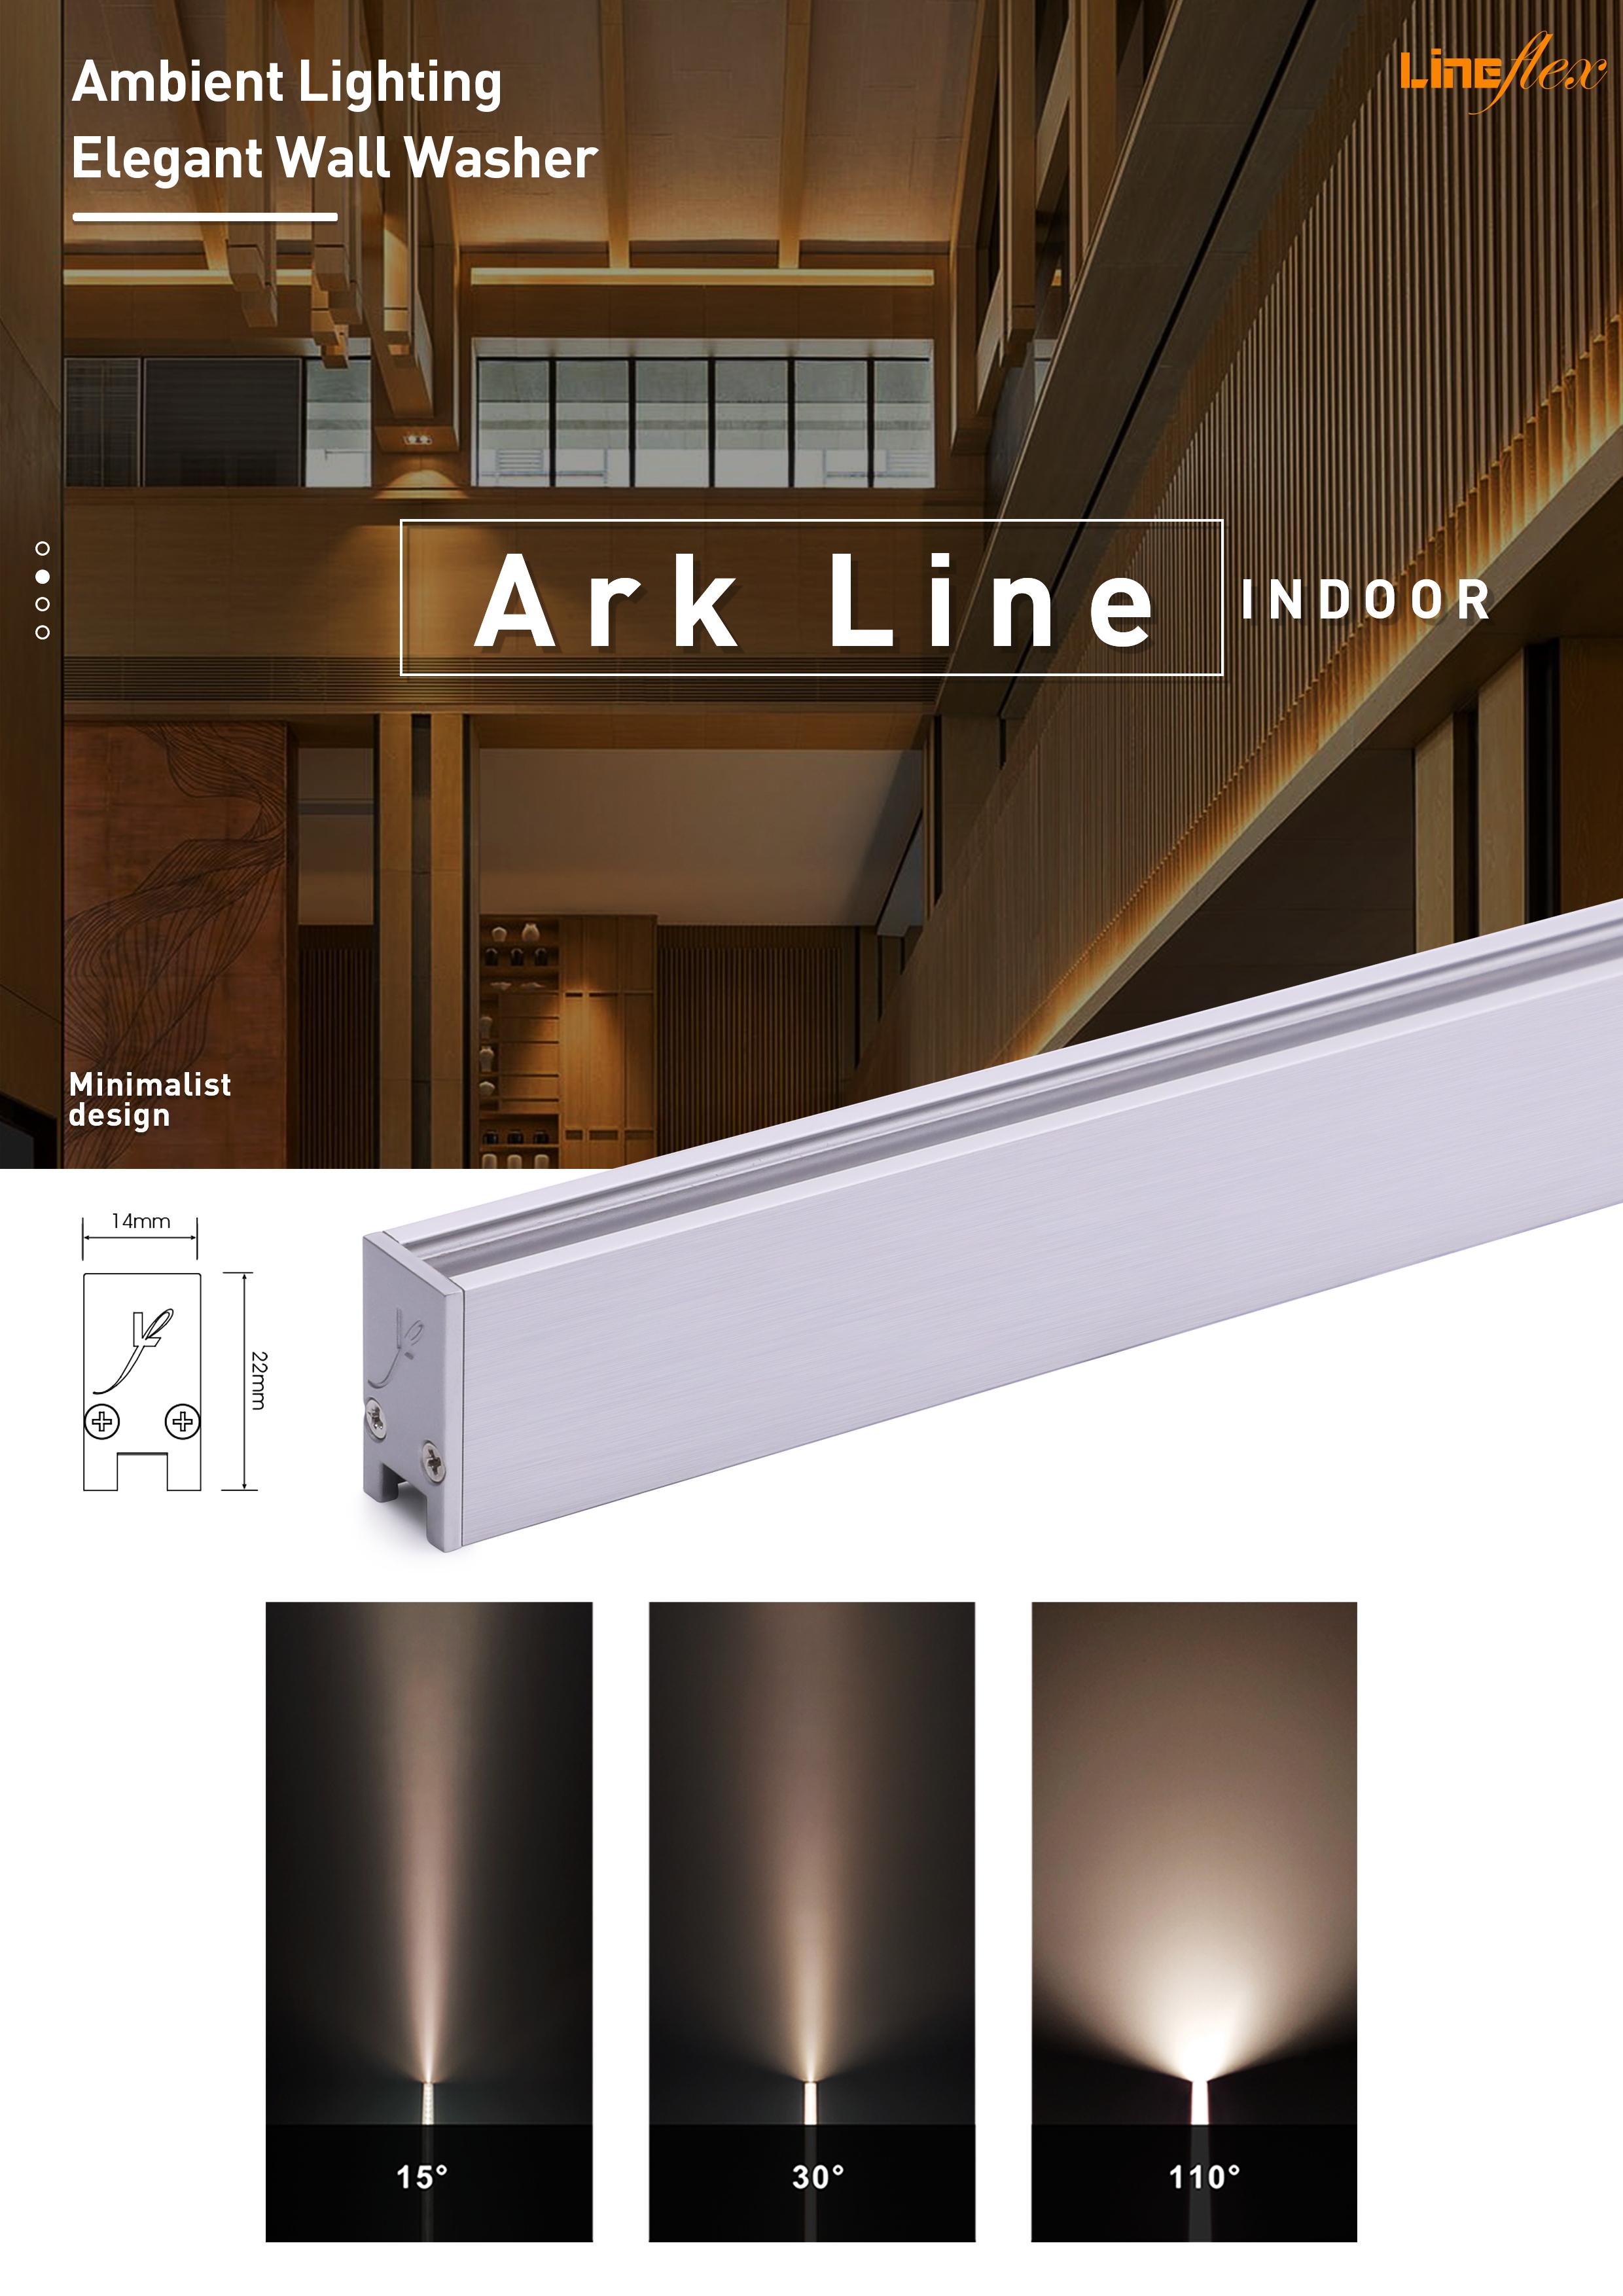 Ark Line indoor